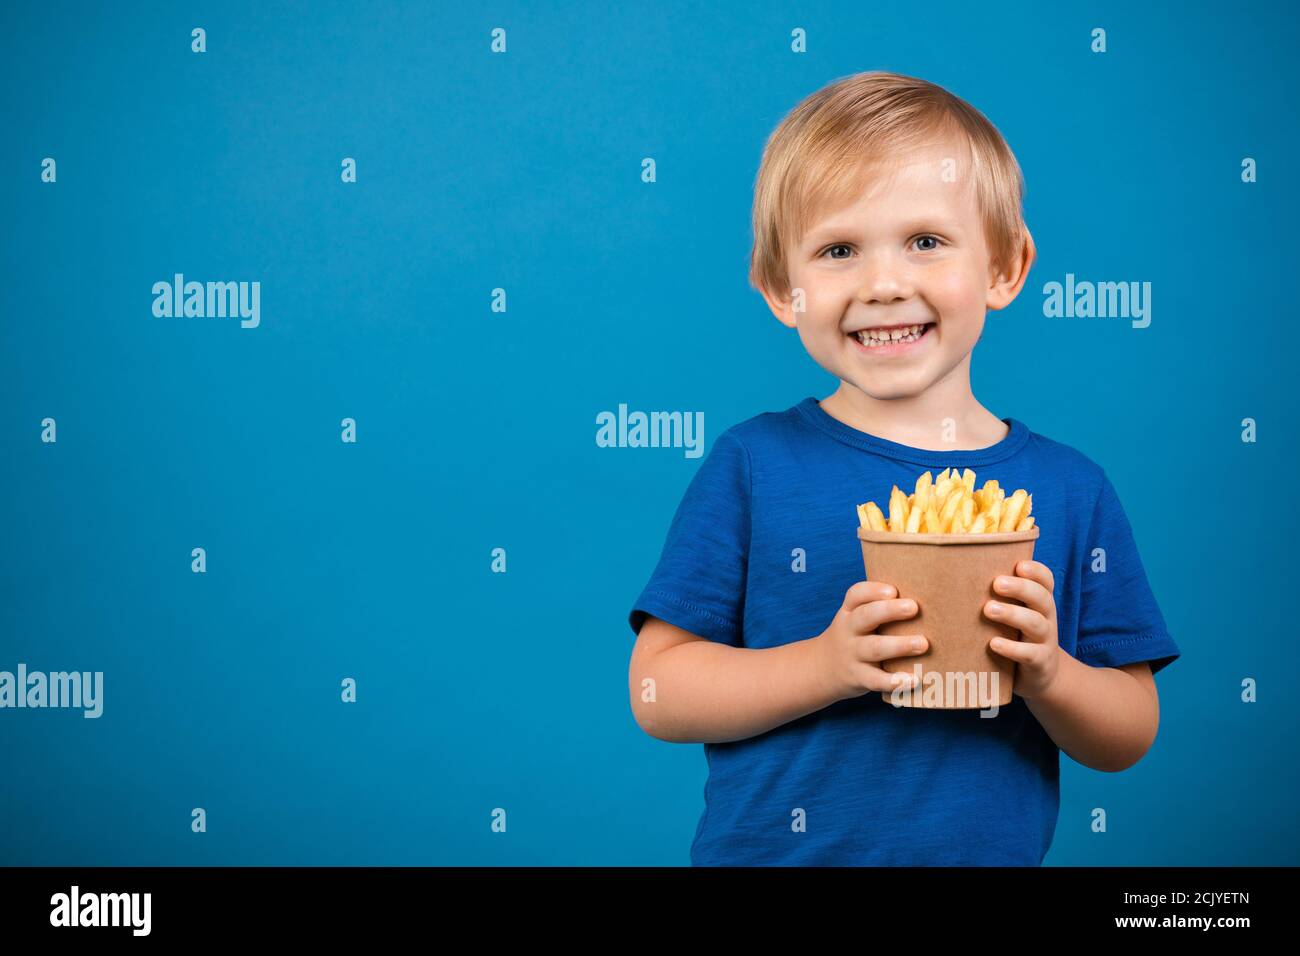 Garçon blond enfant de 4 ans heureux de tenir une tasse avec des frites dans ses mains. Gros plan studio tourné sur fond bleu avec espace pour le texte et la publicité f Banque D'Images